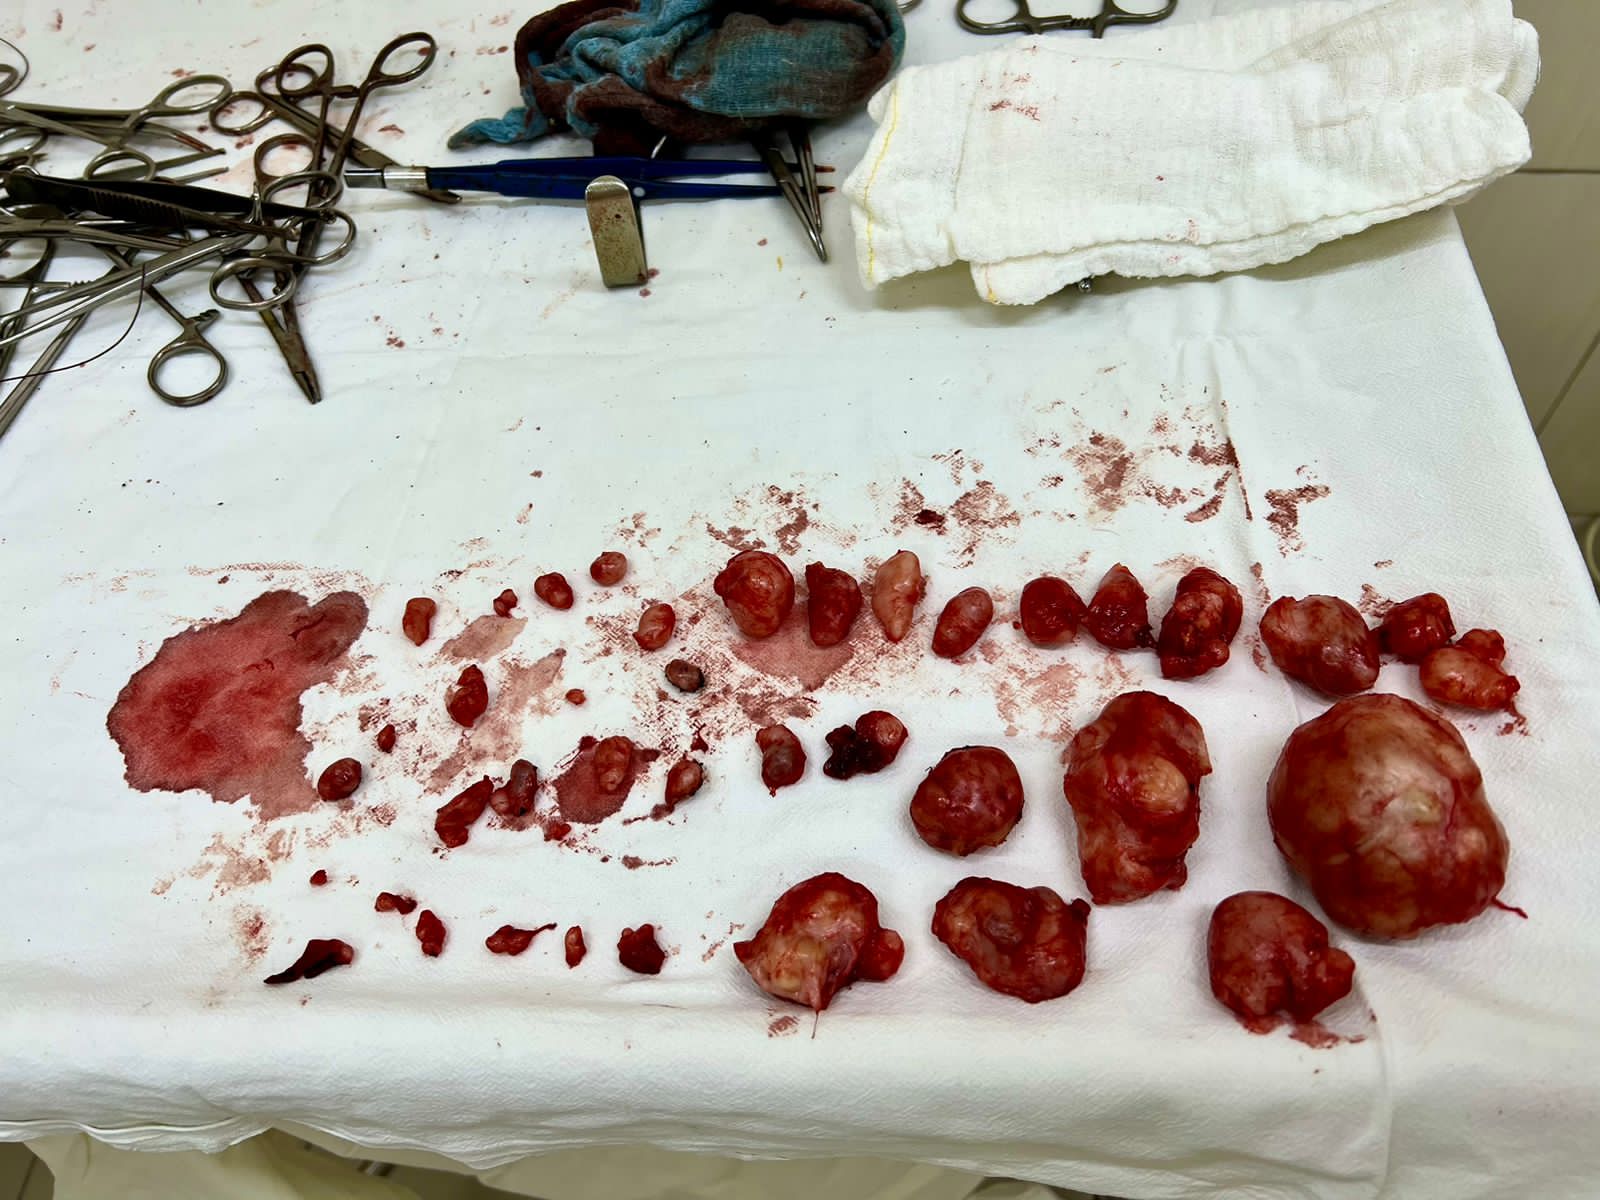 Хирурги НИИАП Ростова-на-Дону удалили 40 опухолей на матке пациентки во время кесарева сечения